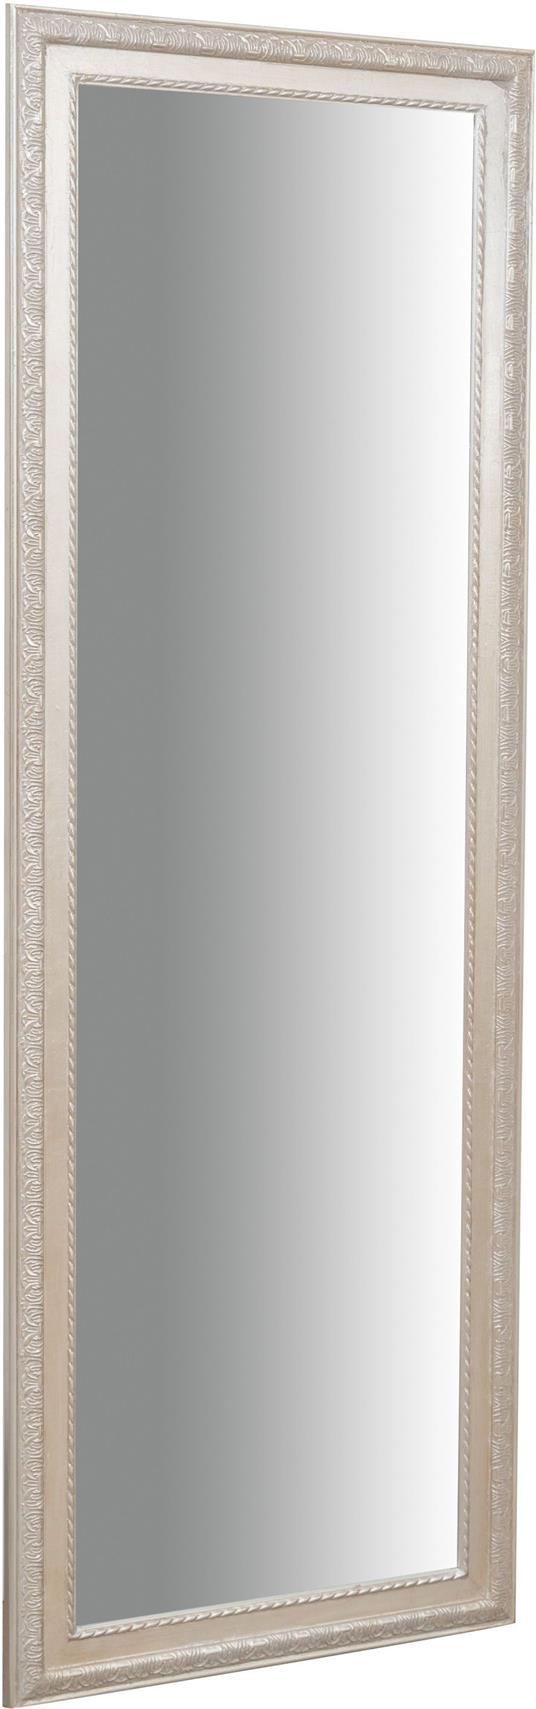 Specchio Specchiera da parete e appendere verticale/orizzontale  L50xPR4xH140 cm finitura foglia argento anticato - Biscottini - Idee regalo